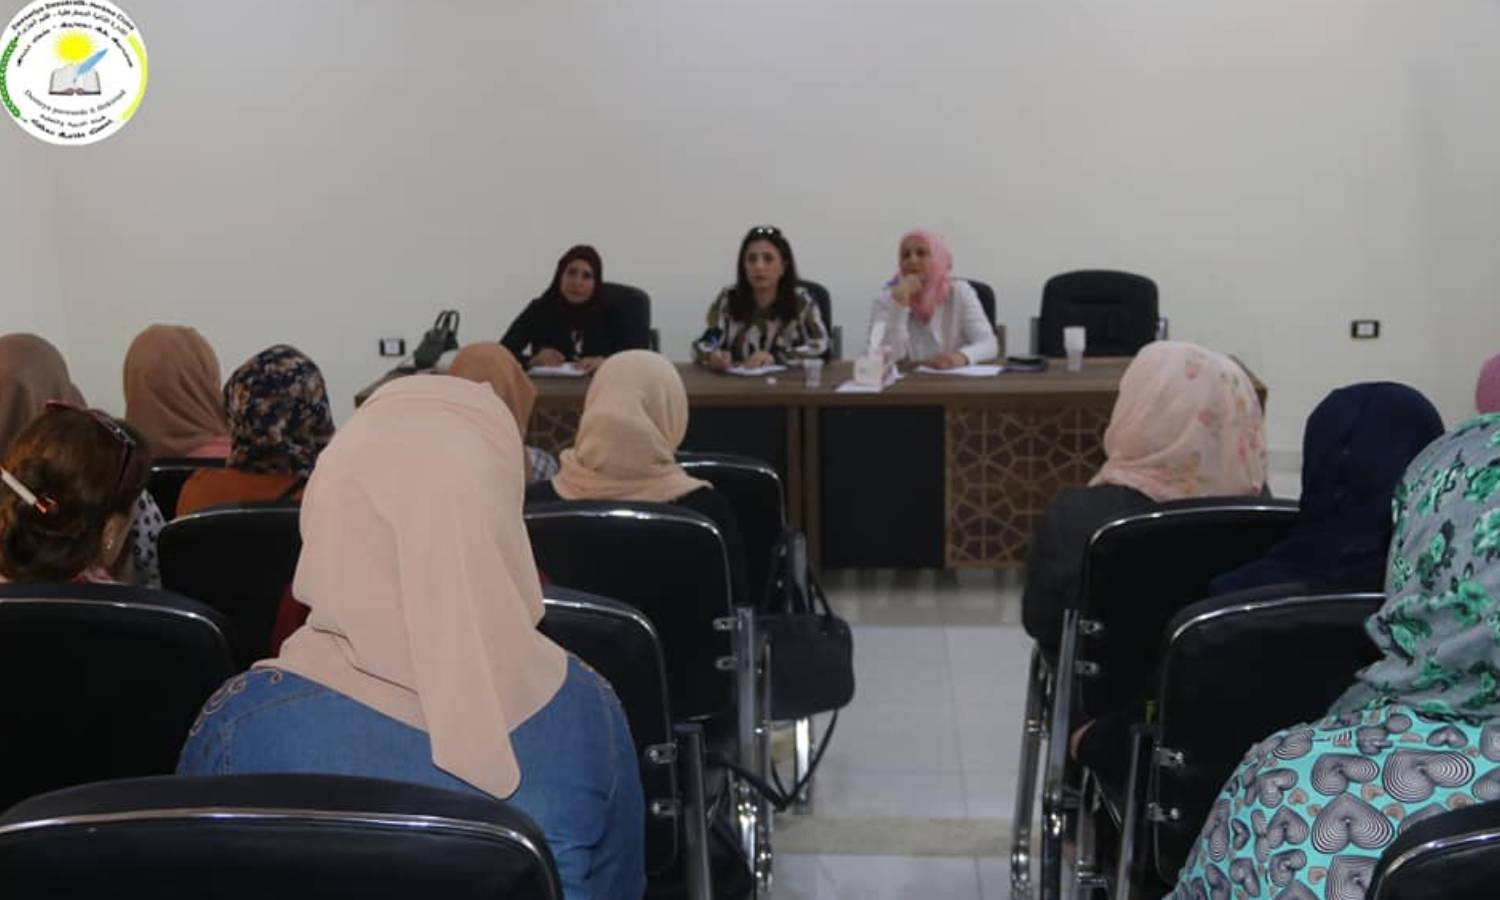 اجتماع المعلمات في "ديرك" شمال شرقي سوريا (هيئة التربية والتعليم)